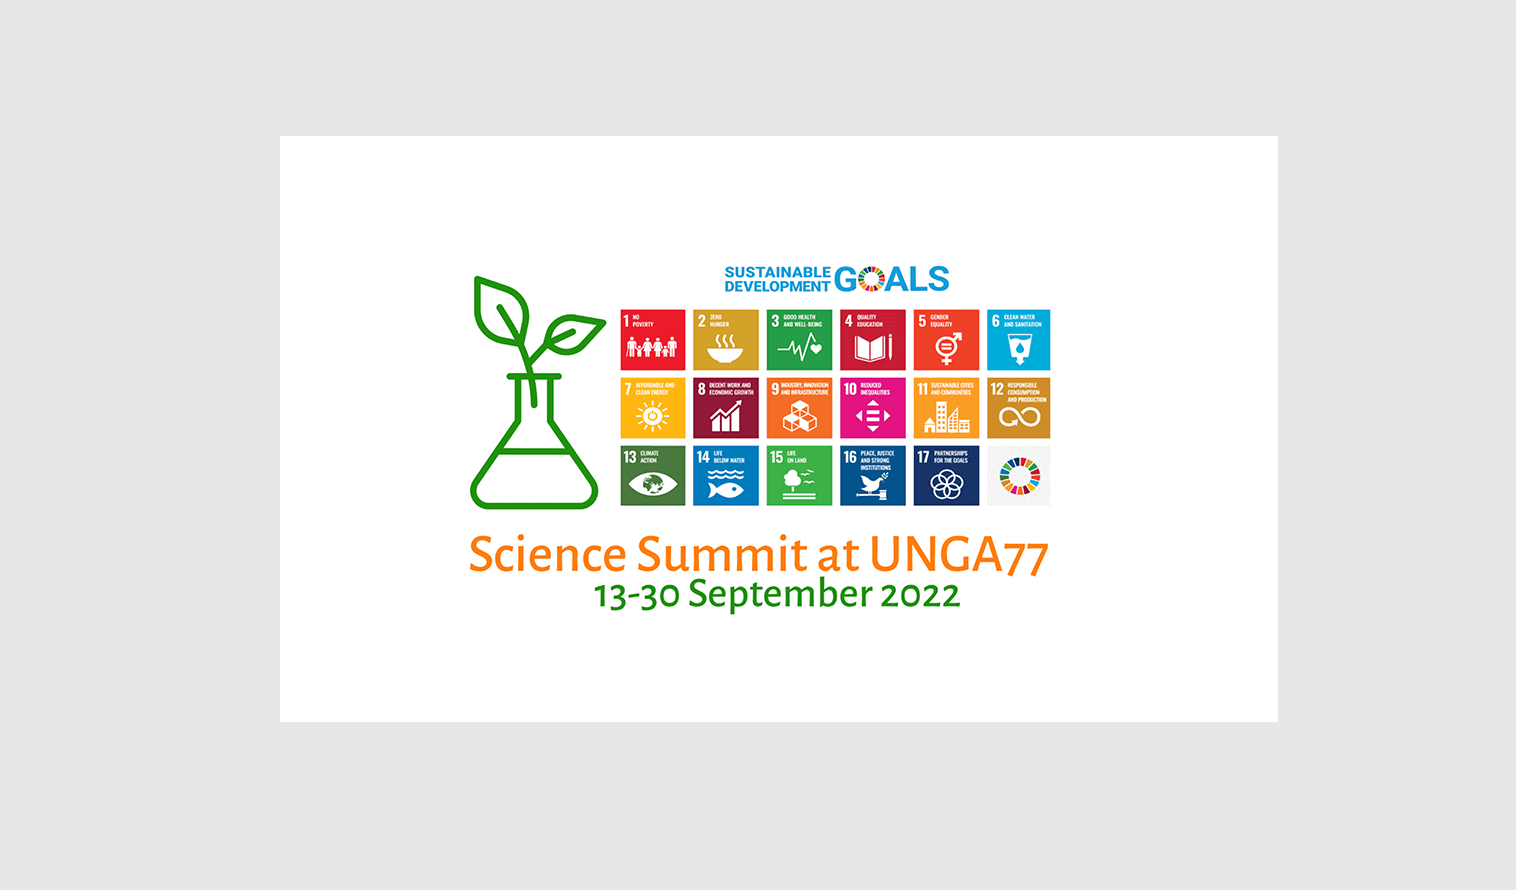 Science Summit at UNGA77